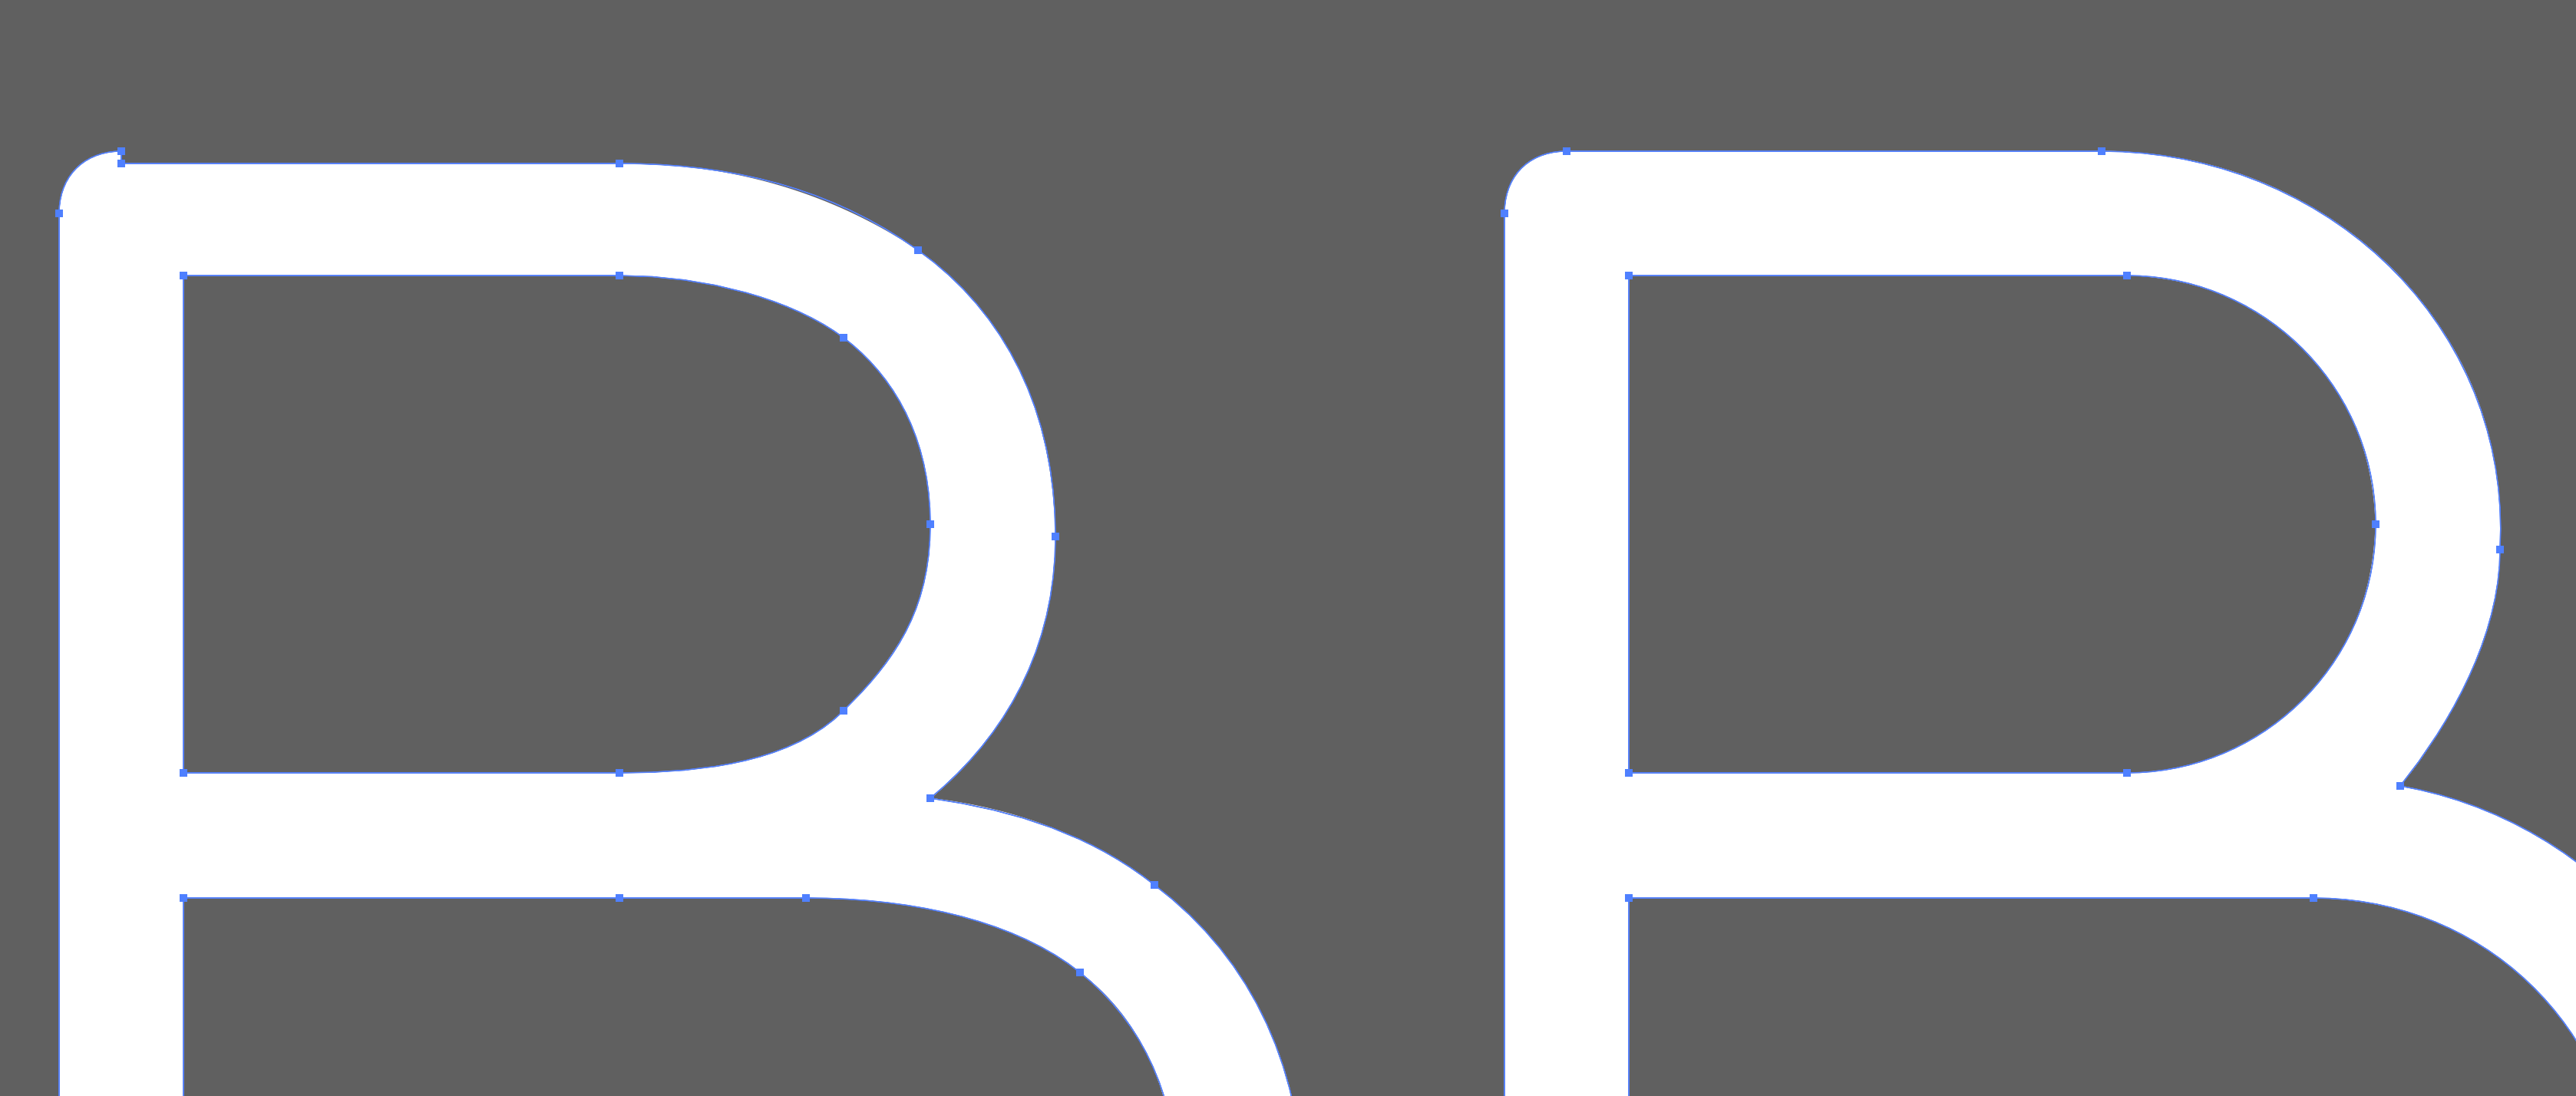 Running Stick Figure Vector SVG Icon (2) - SVG Repo